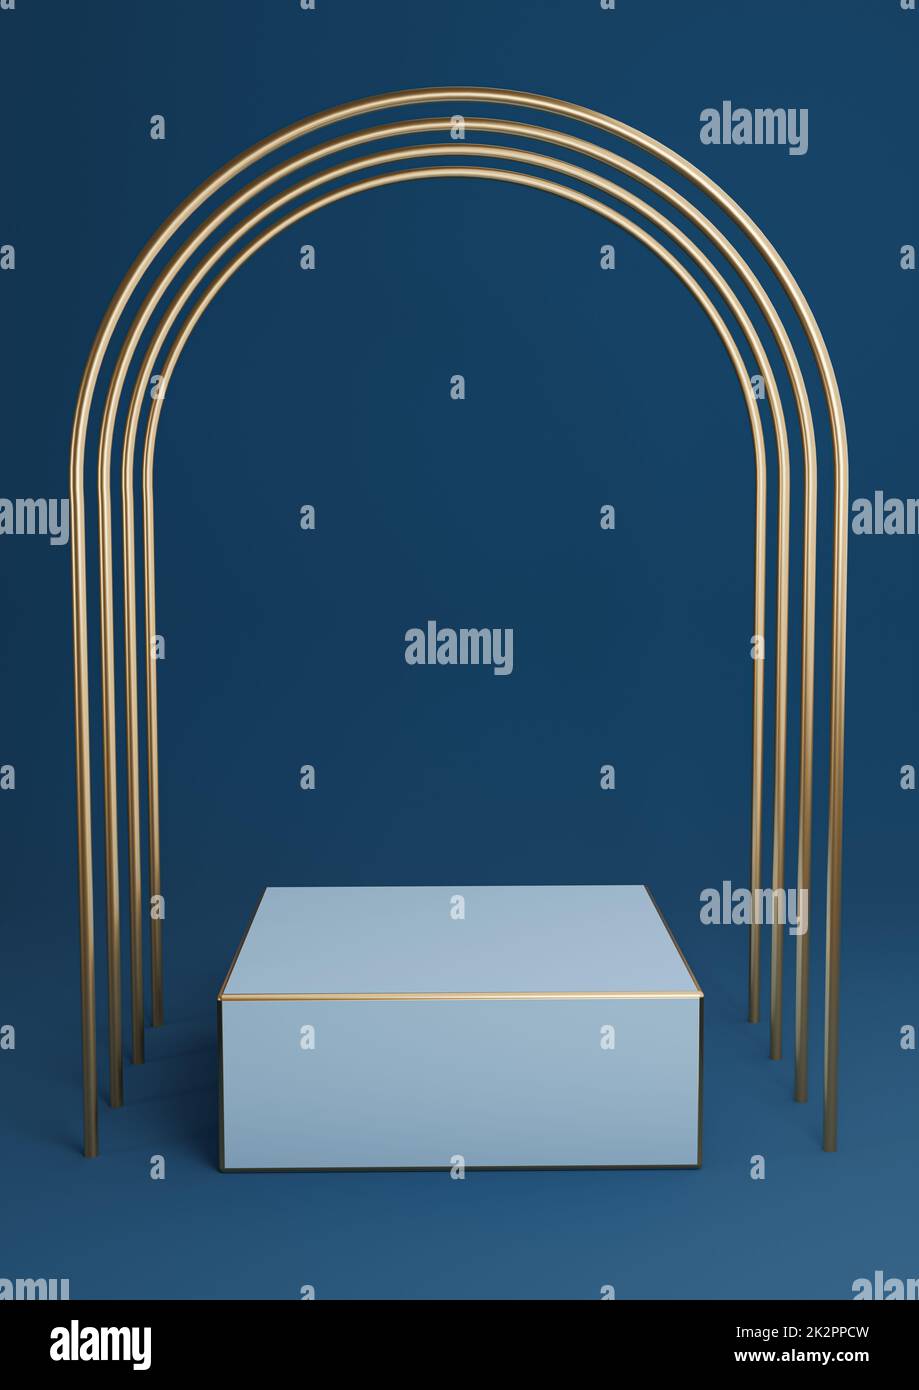 Dunkles, blaues 3D-Bild für minimalistische Produktpräsentation Würfelpodium oder Ständer mit luxuriösen goldenen Bögen und goldenen Linien. Einfache abstrakte Hintergrundkomposition. Stockfoto